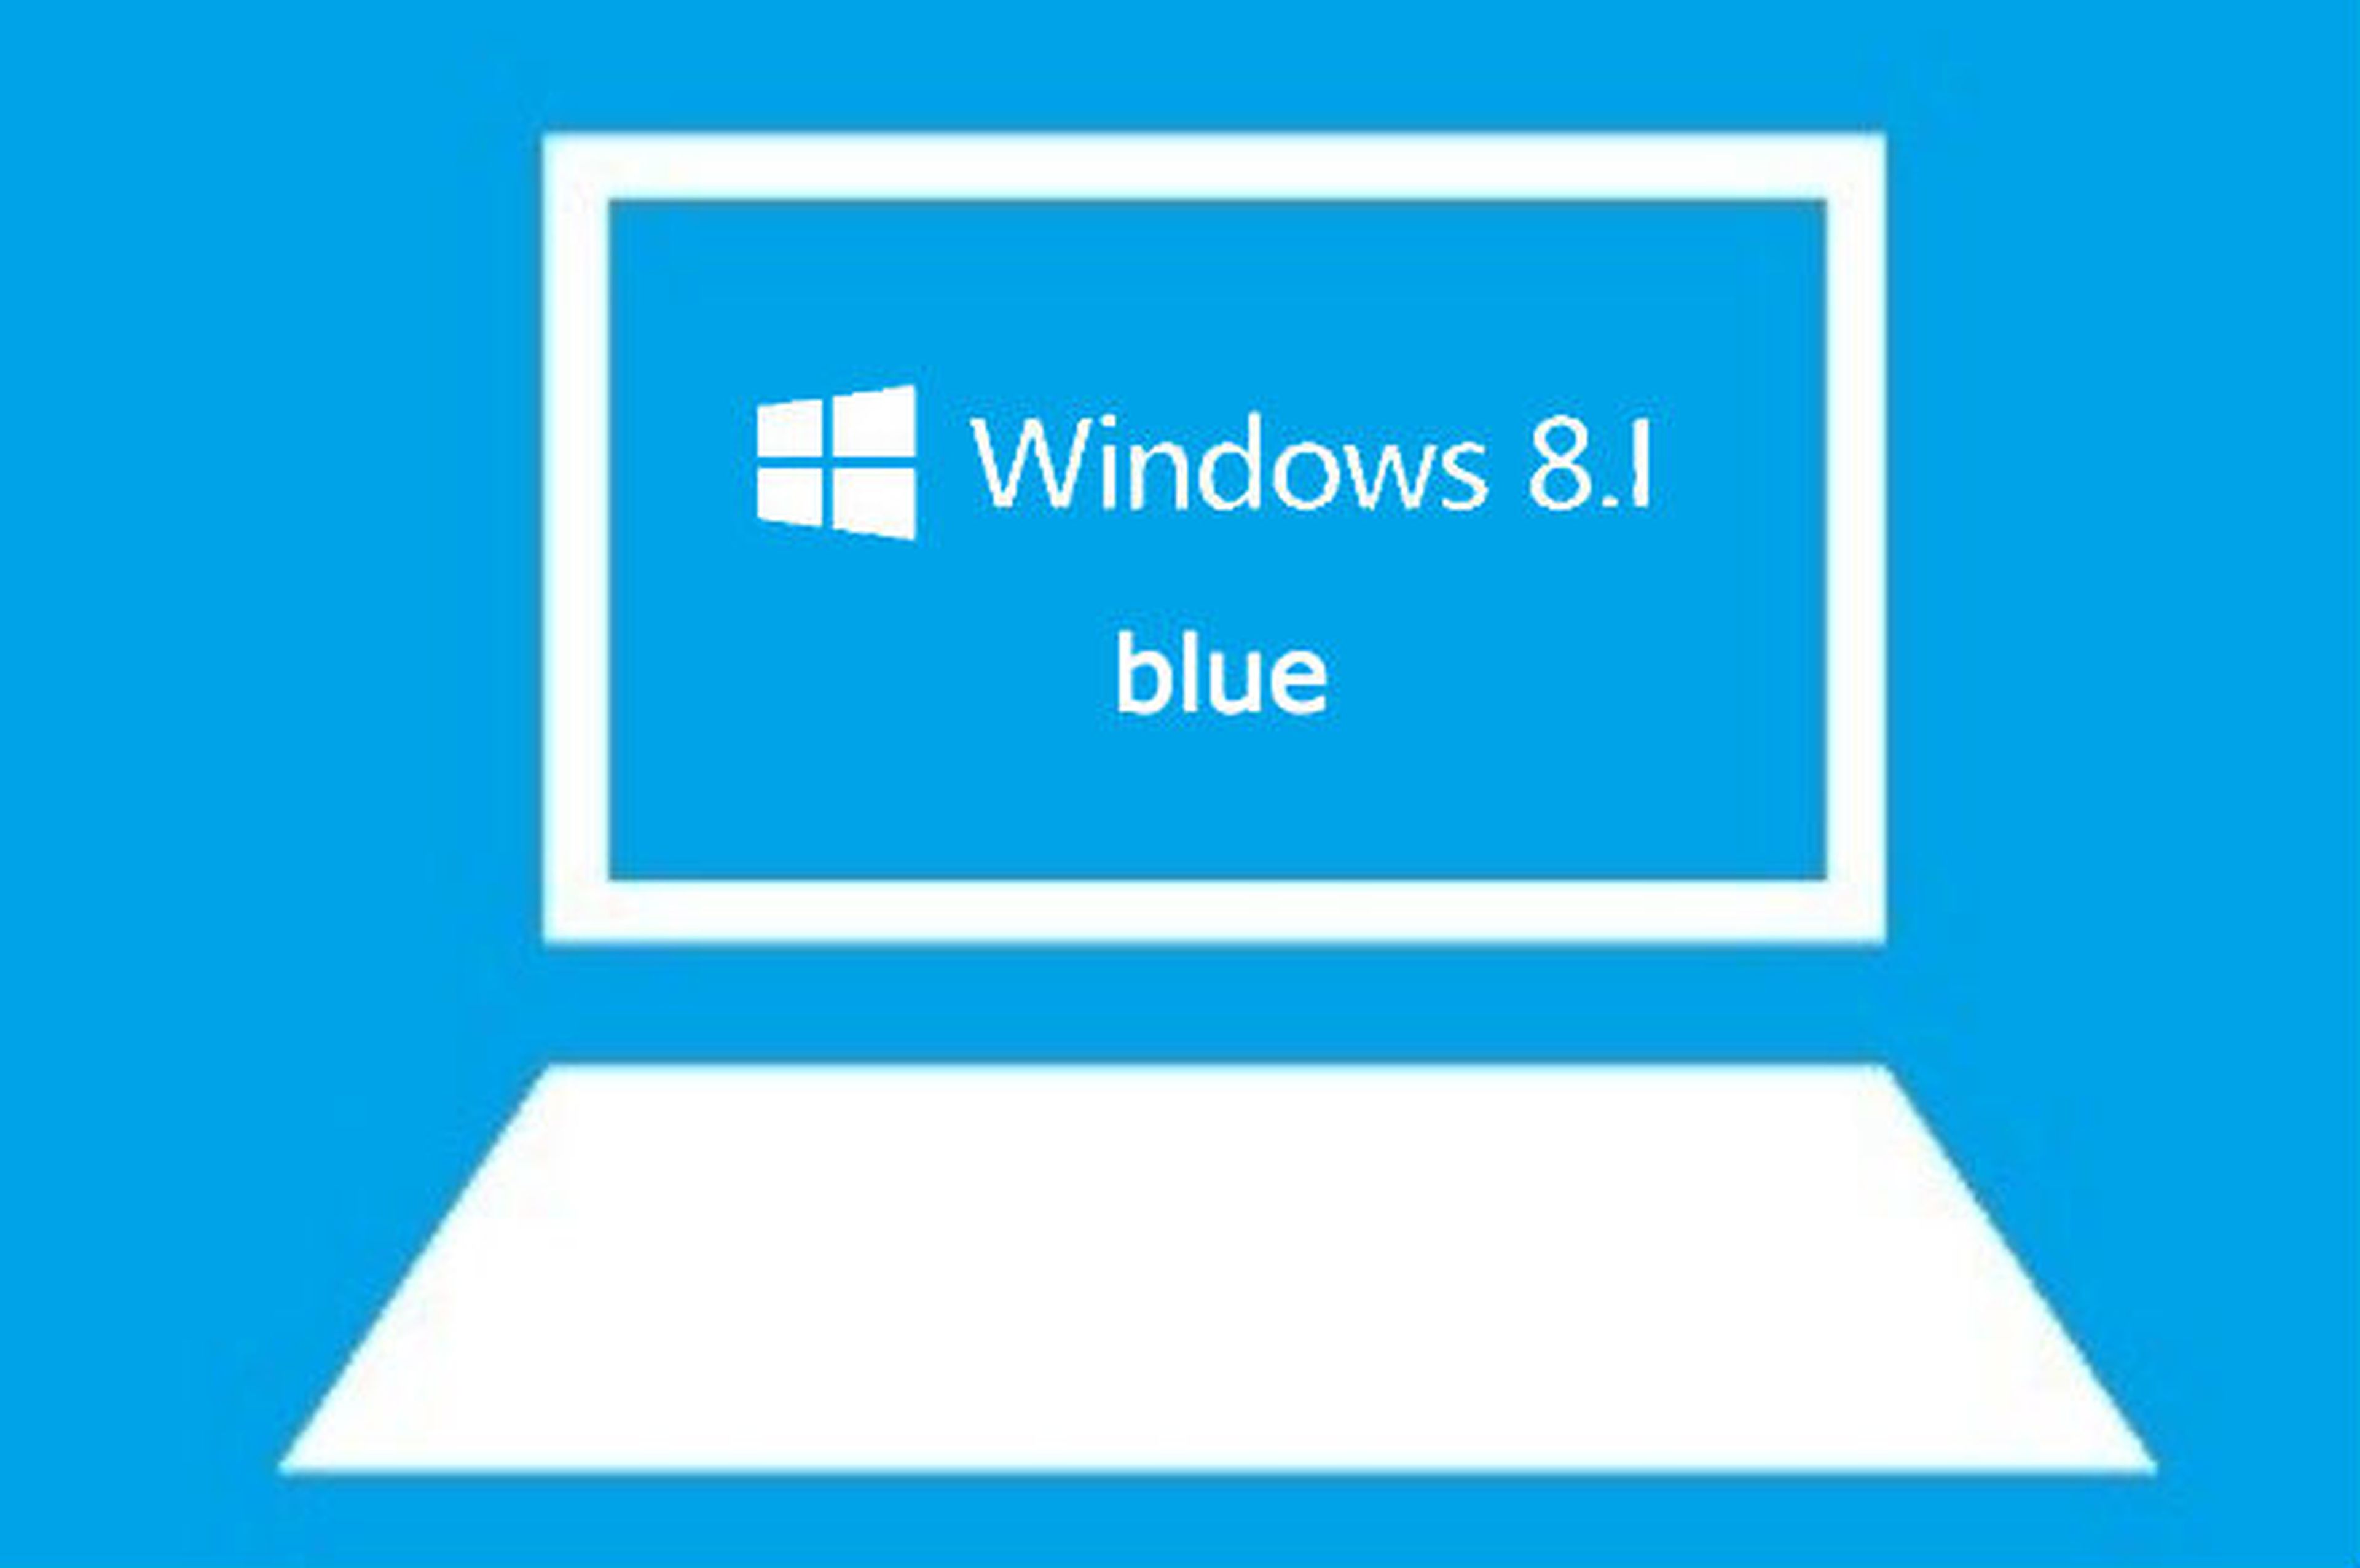 Windows 8.1 "Blue"